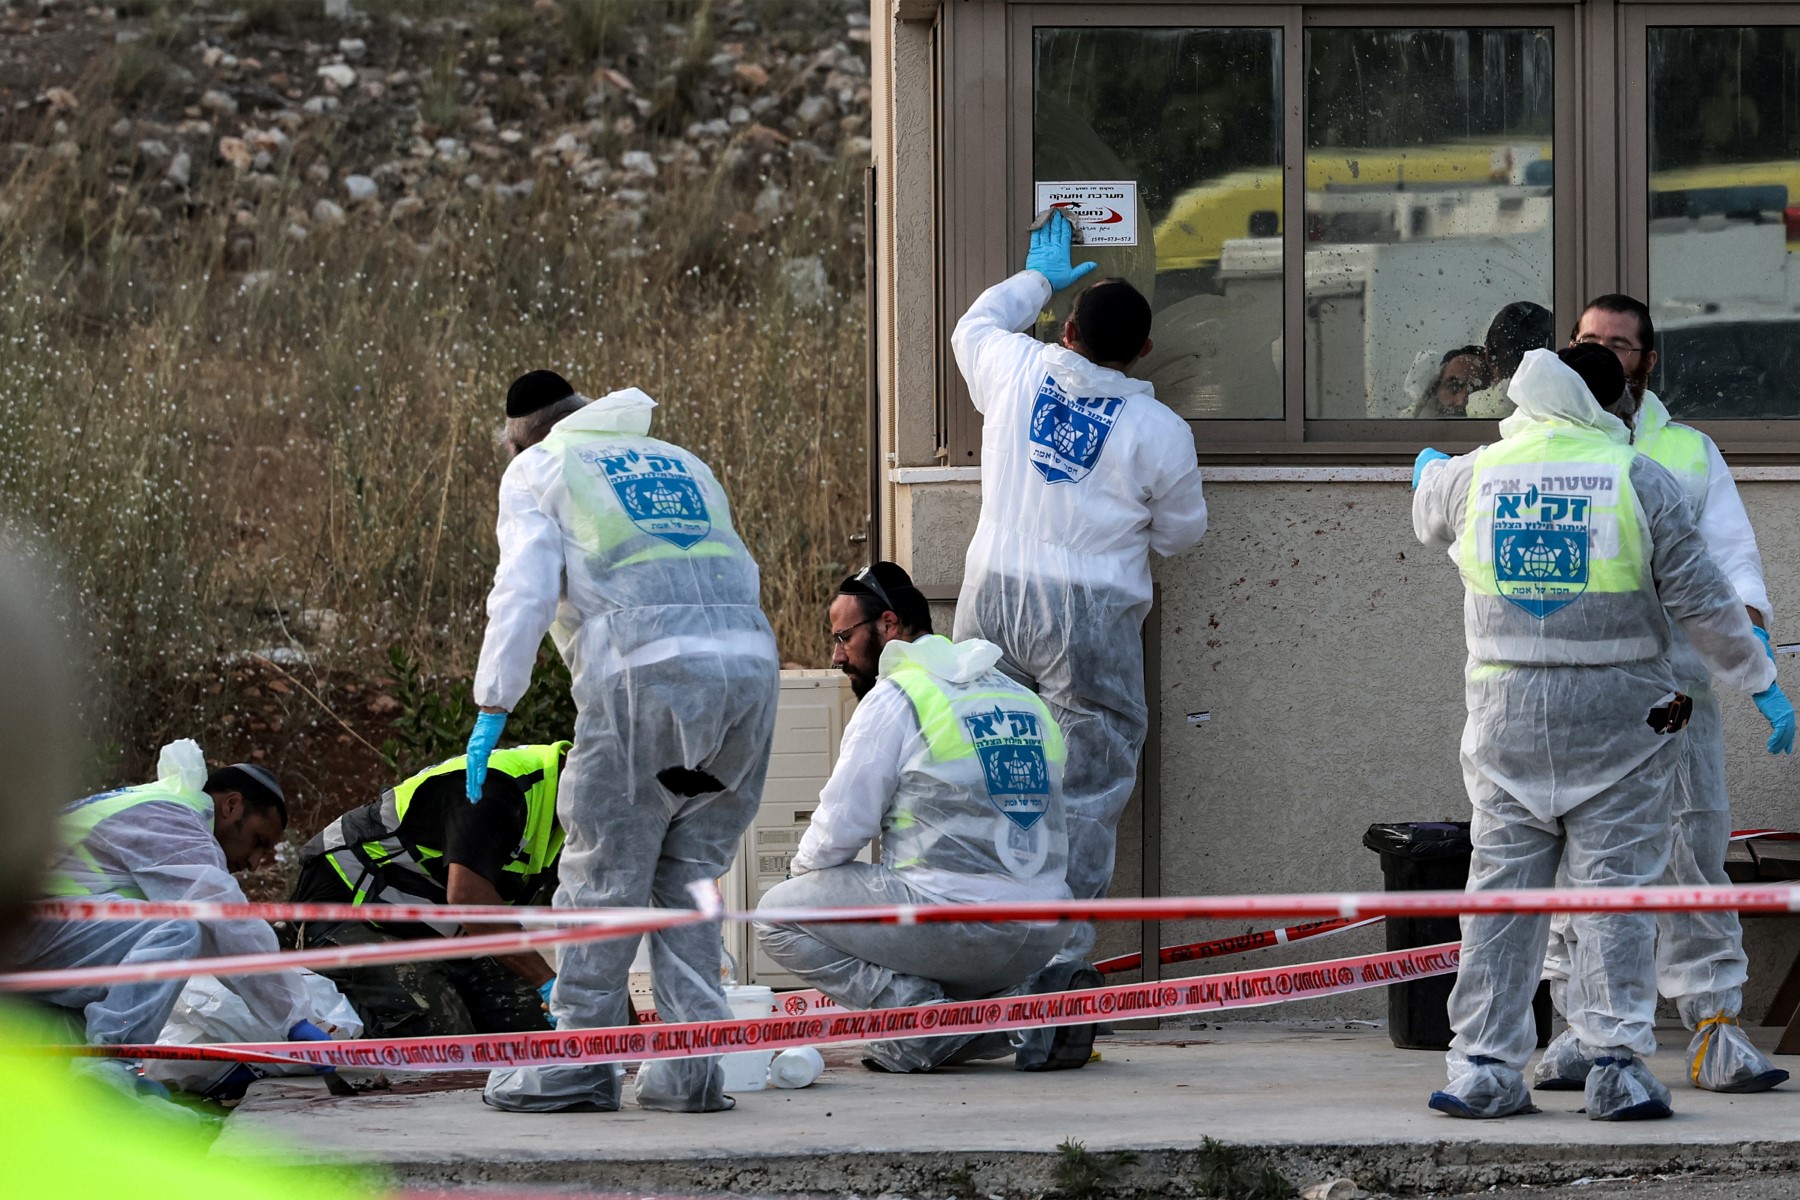 Grupo de terroristas abrió fuego en una gasolinera y mató a cuatro israelíes en Cisjordania